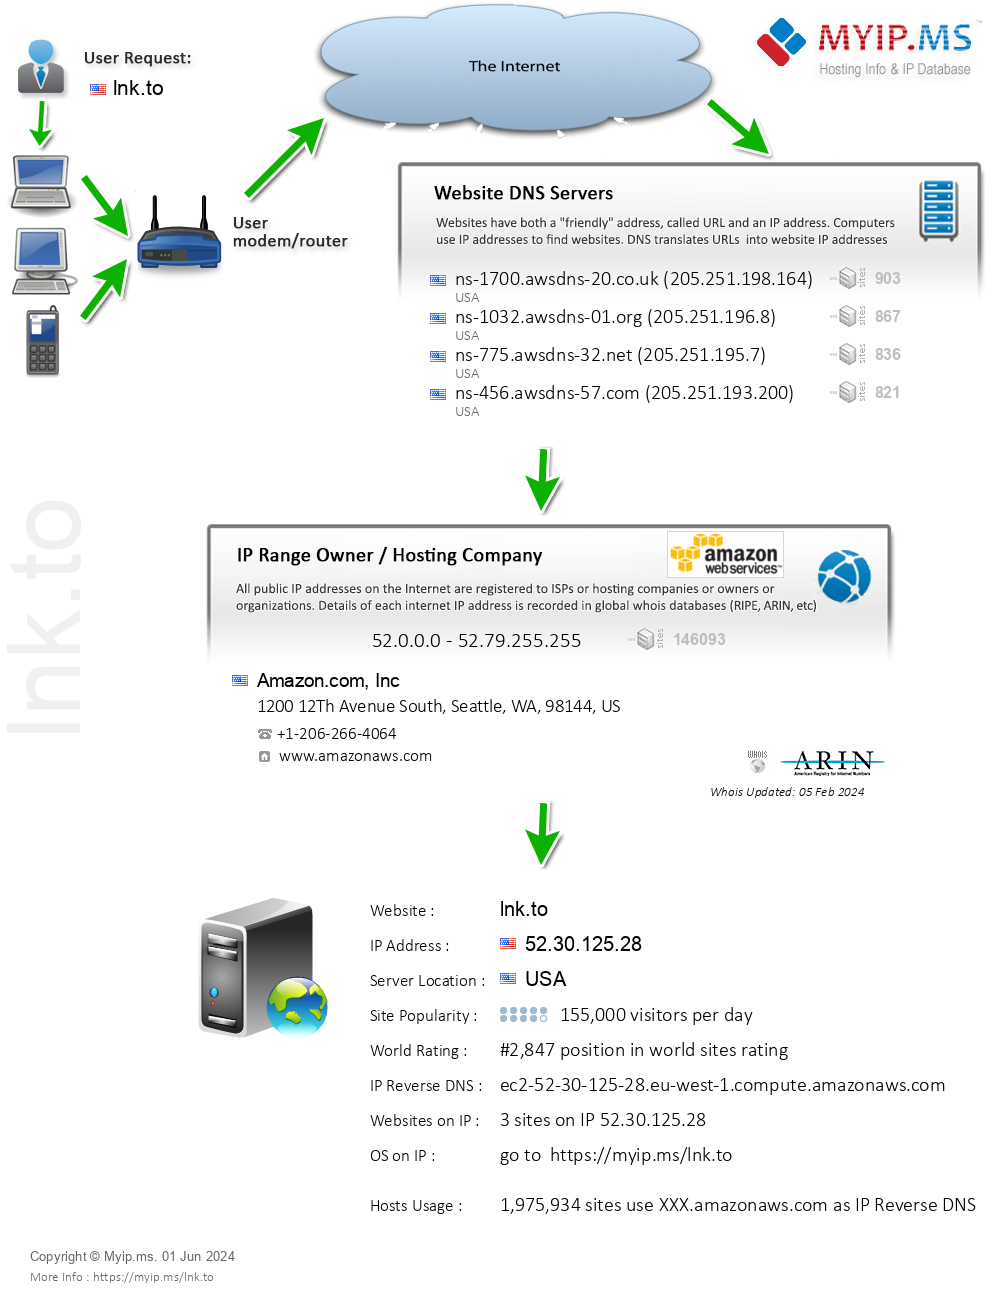 Lnk.to - Website Hosting Visual IP Diagram